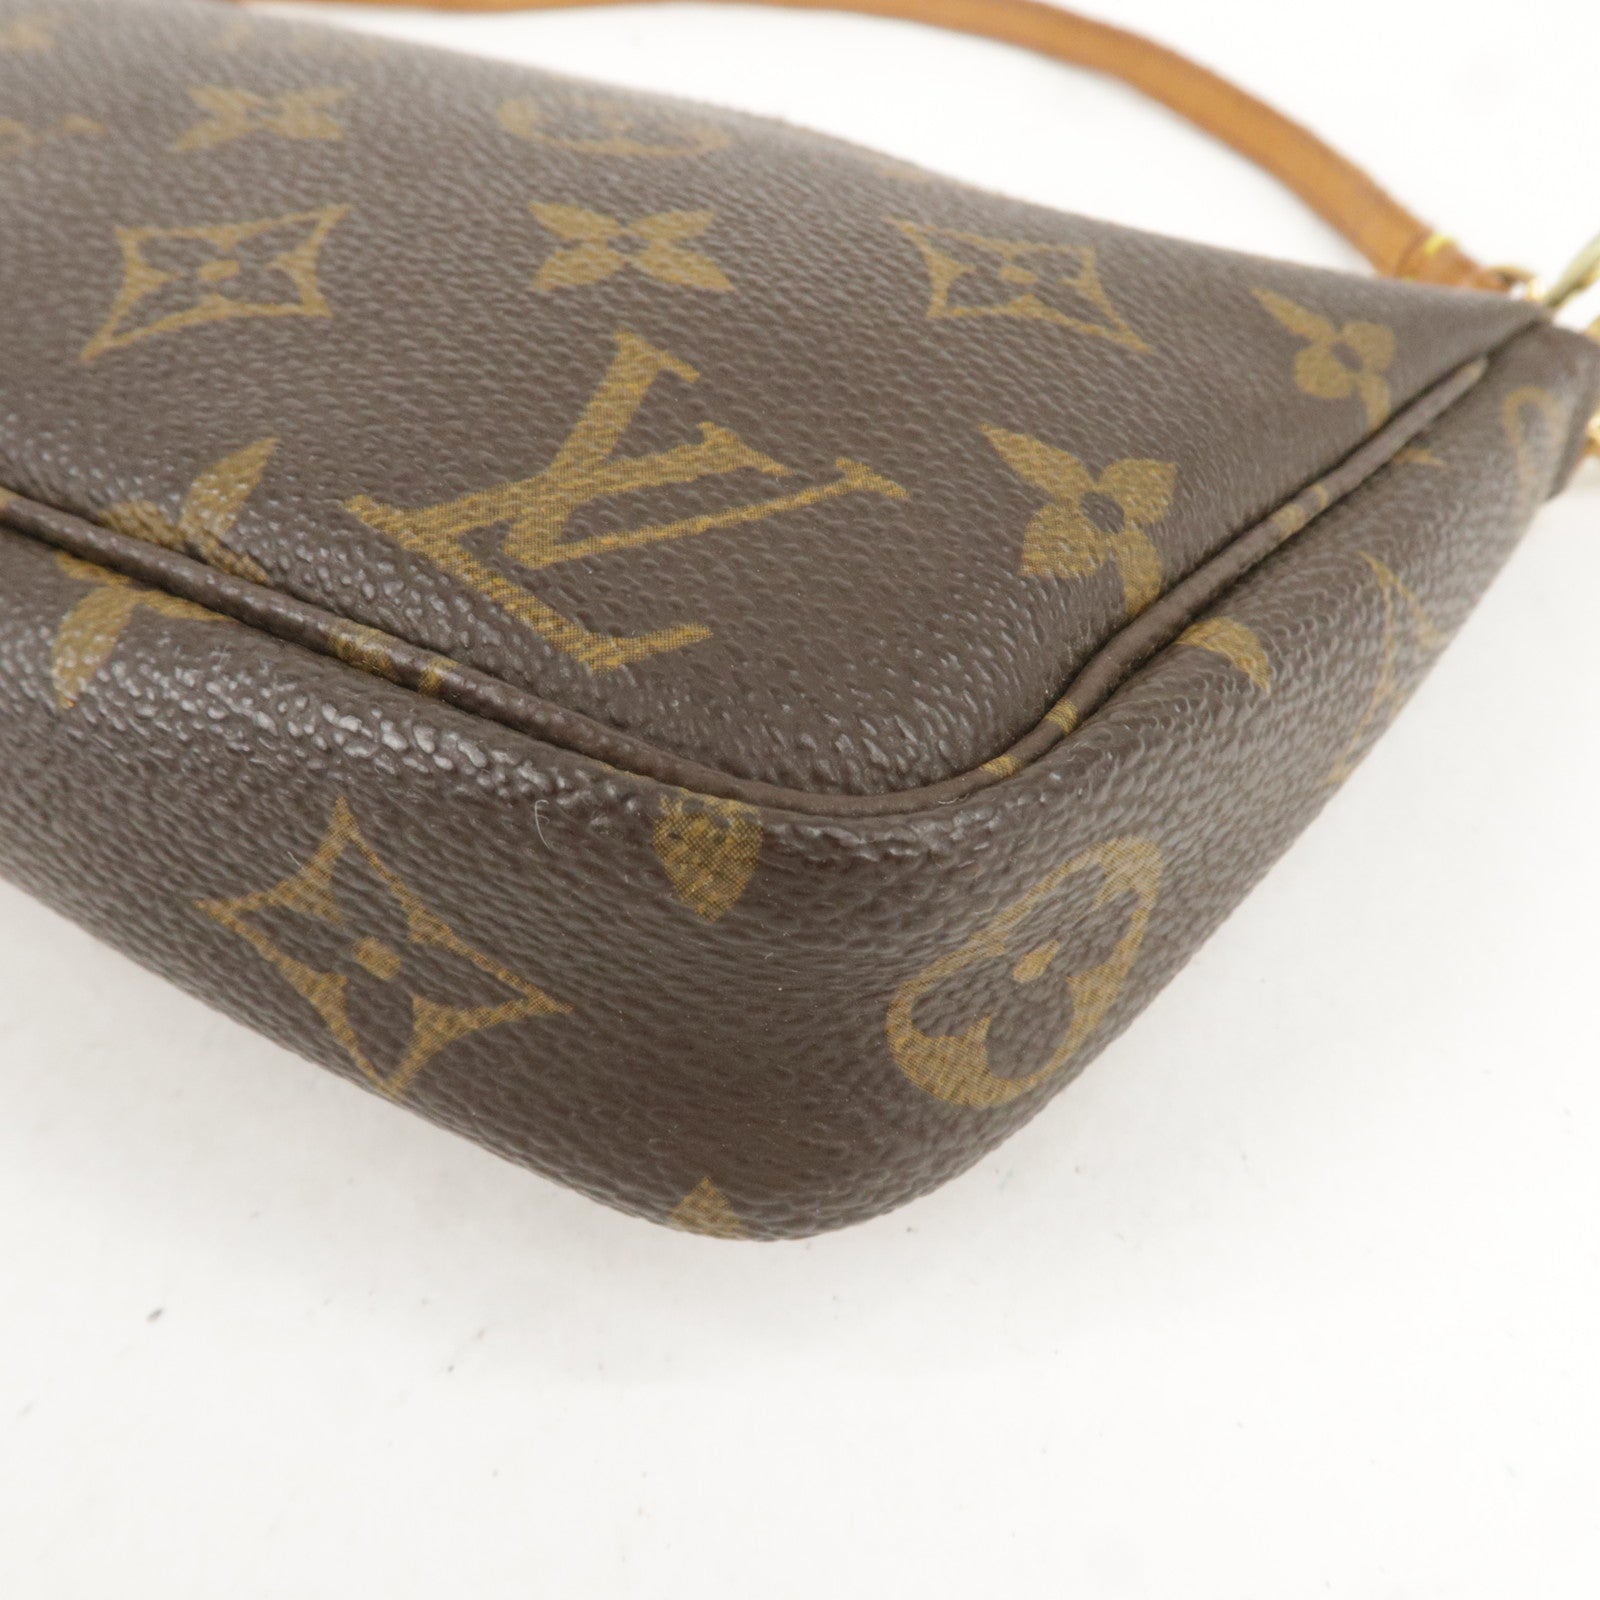 LOUIS VUITTON Monogram accessoire M51980 Handbag Brown Vintage Old